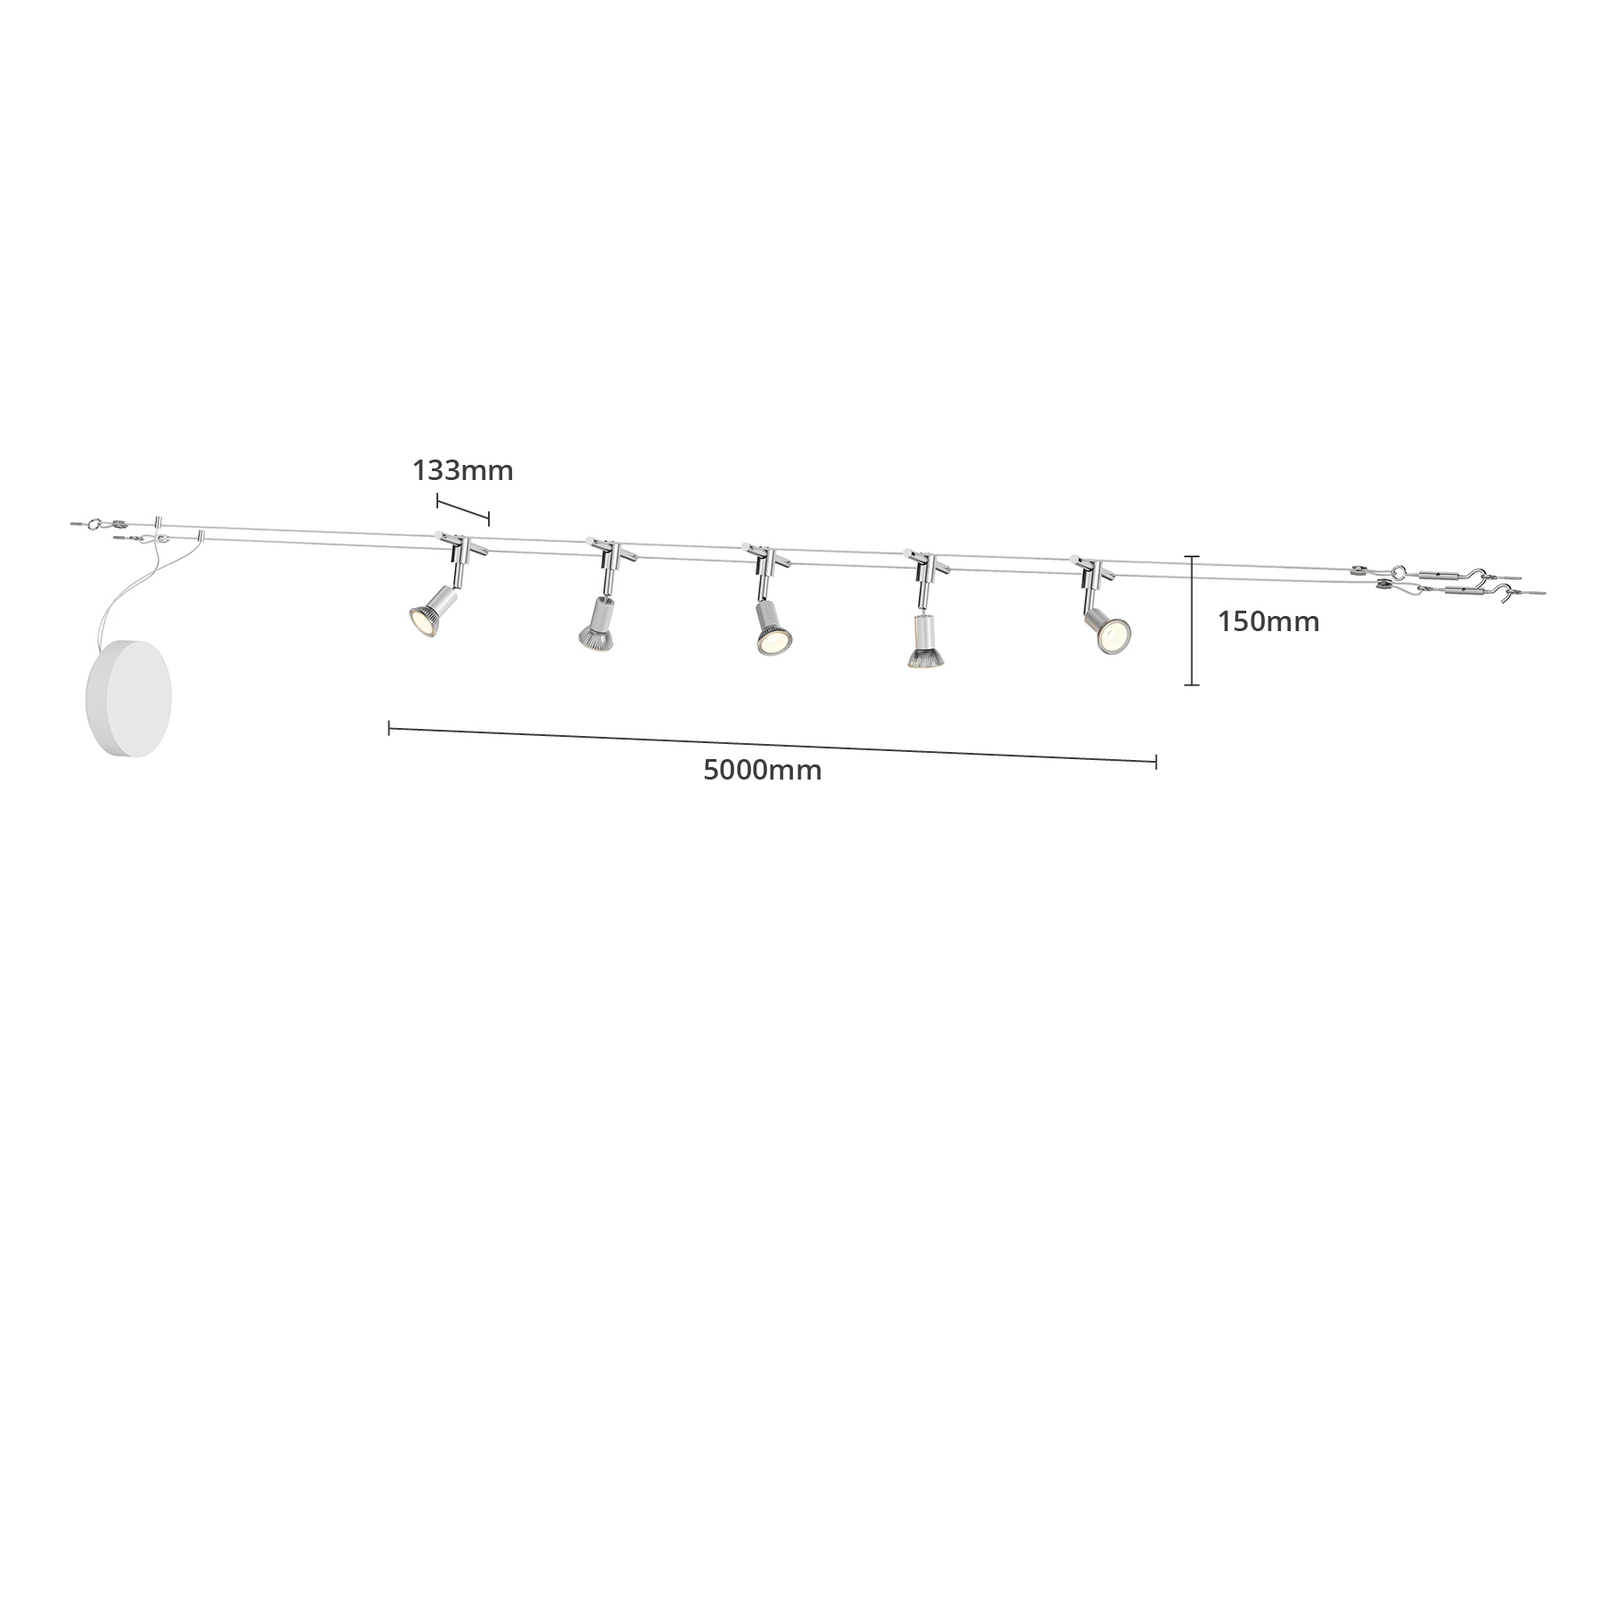 Lankový systém Rope s reflektory, pět zdrojů